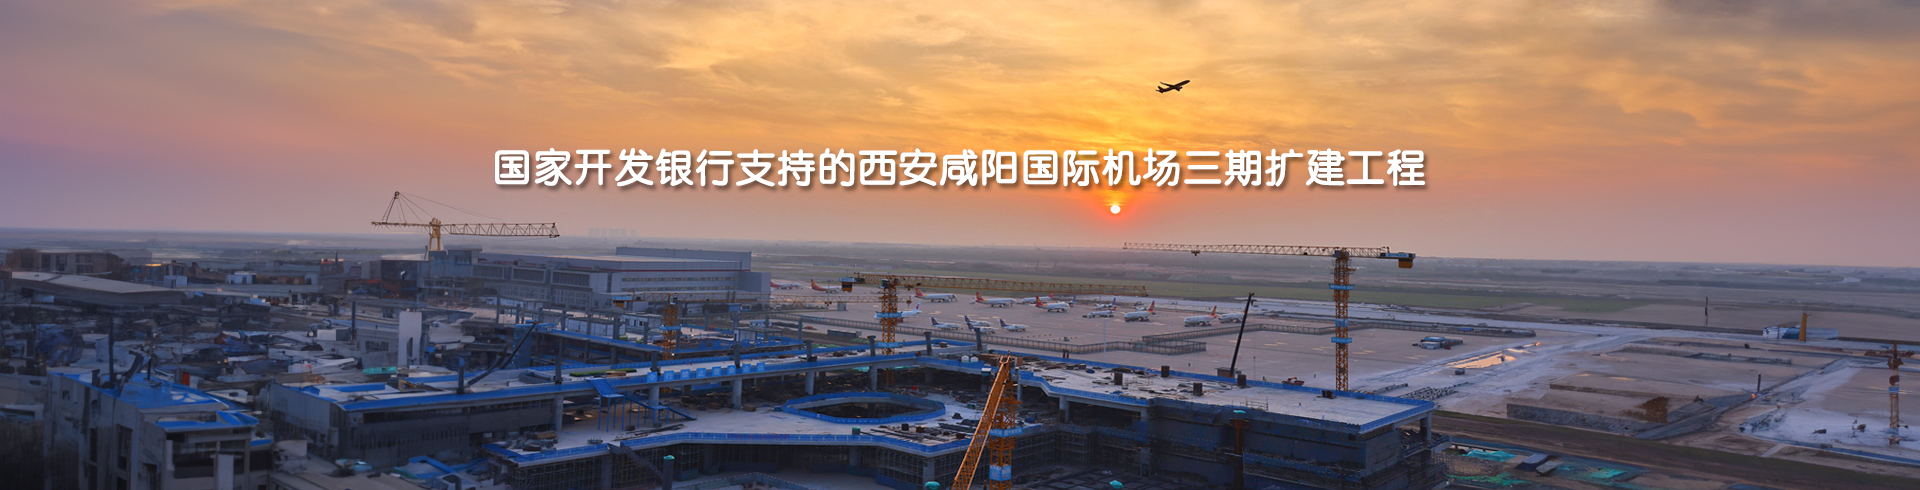 国家开发银行支持的西安咸阳国际机场三期扩建工程-pc